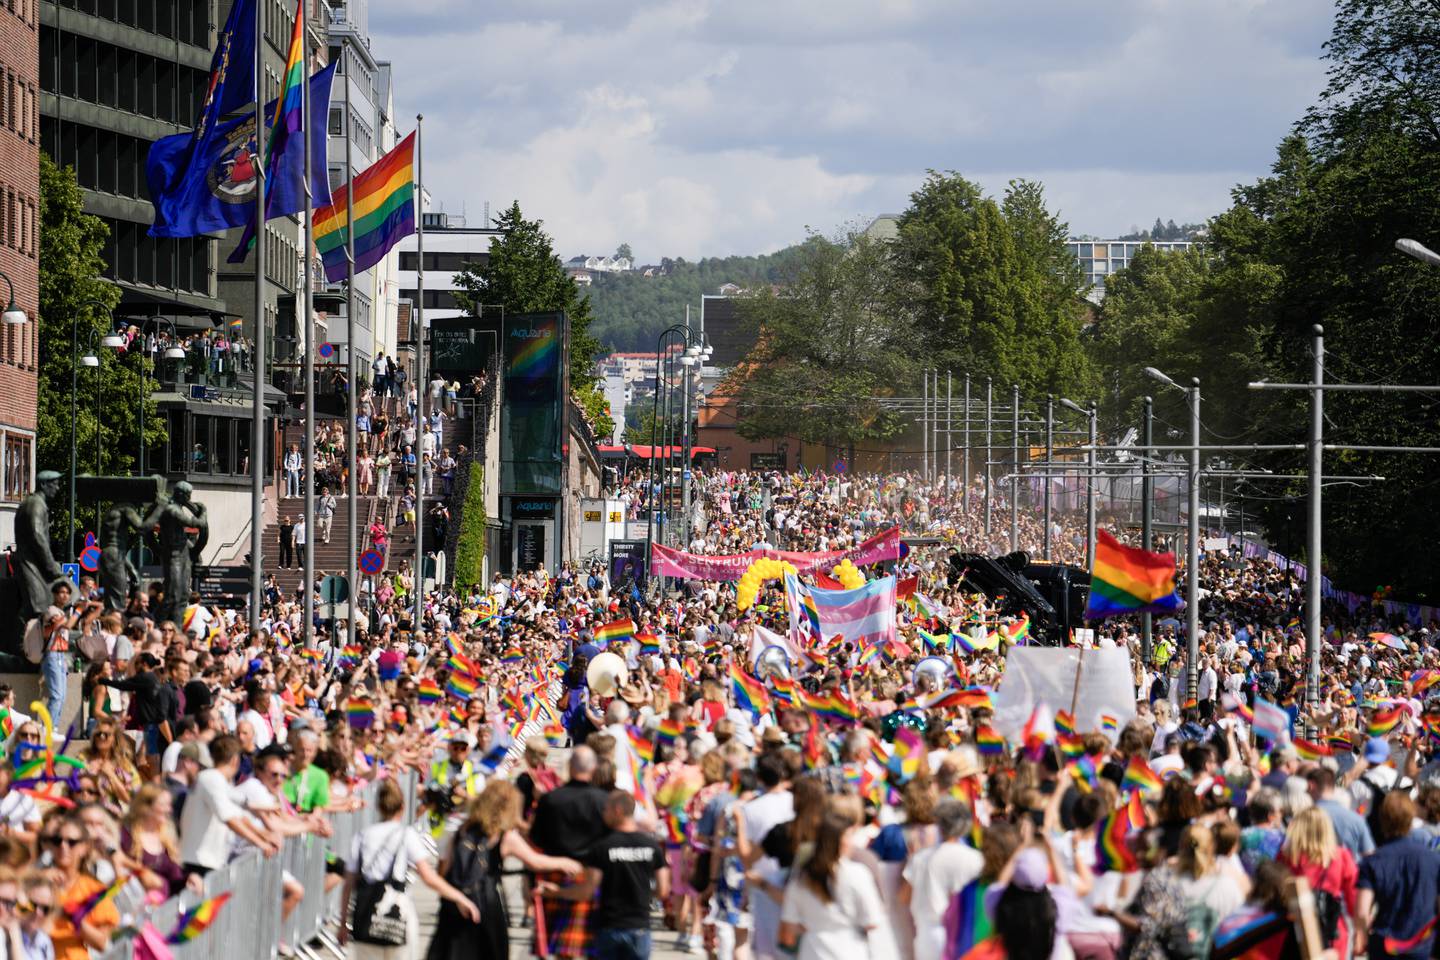 Prideparaden gikk fra Grønland til Pride Park i Oslo.
Foto: Javad Parsa / NTB